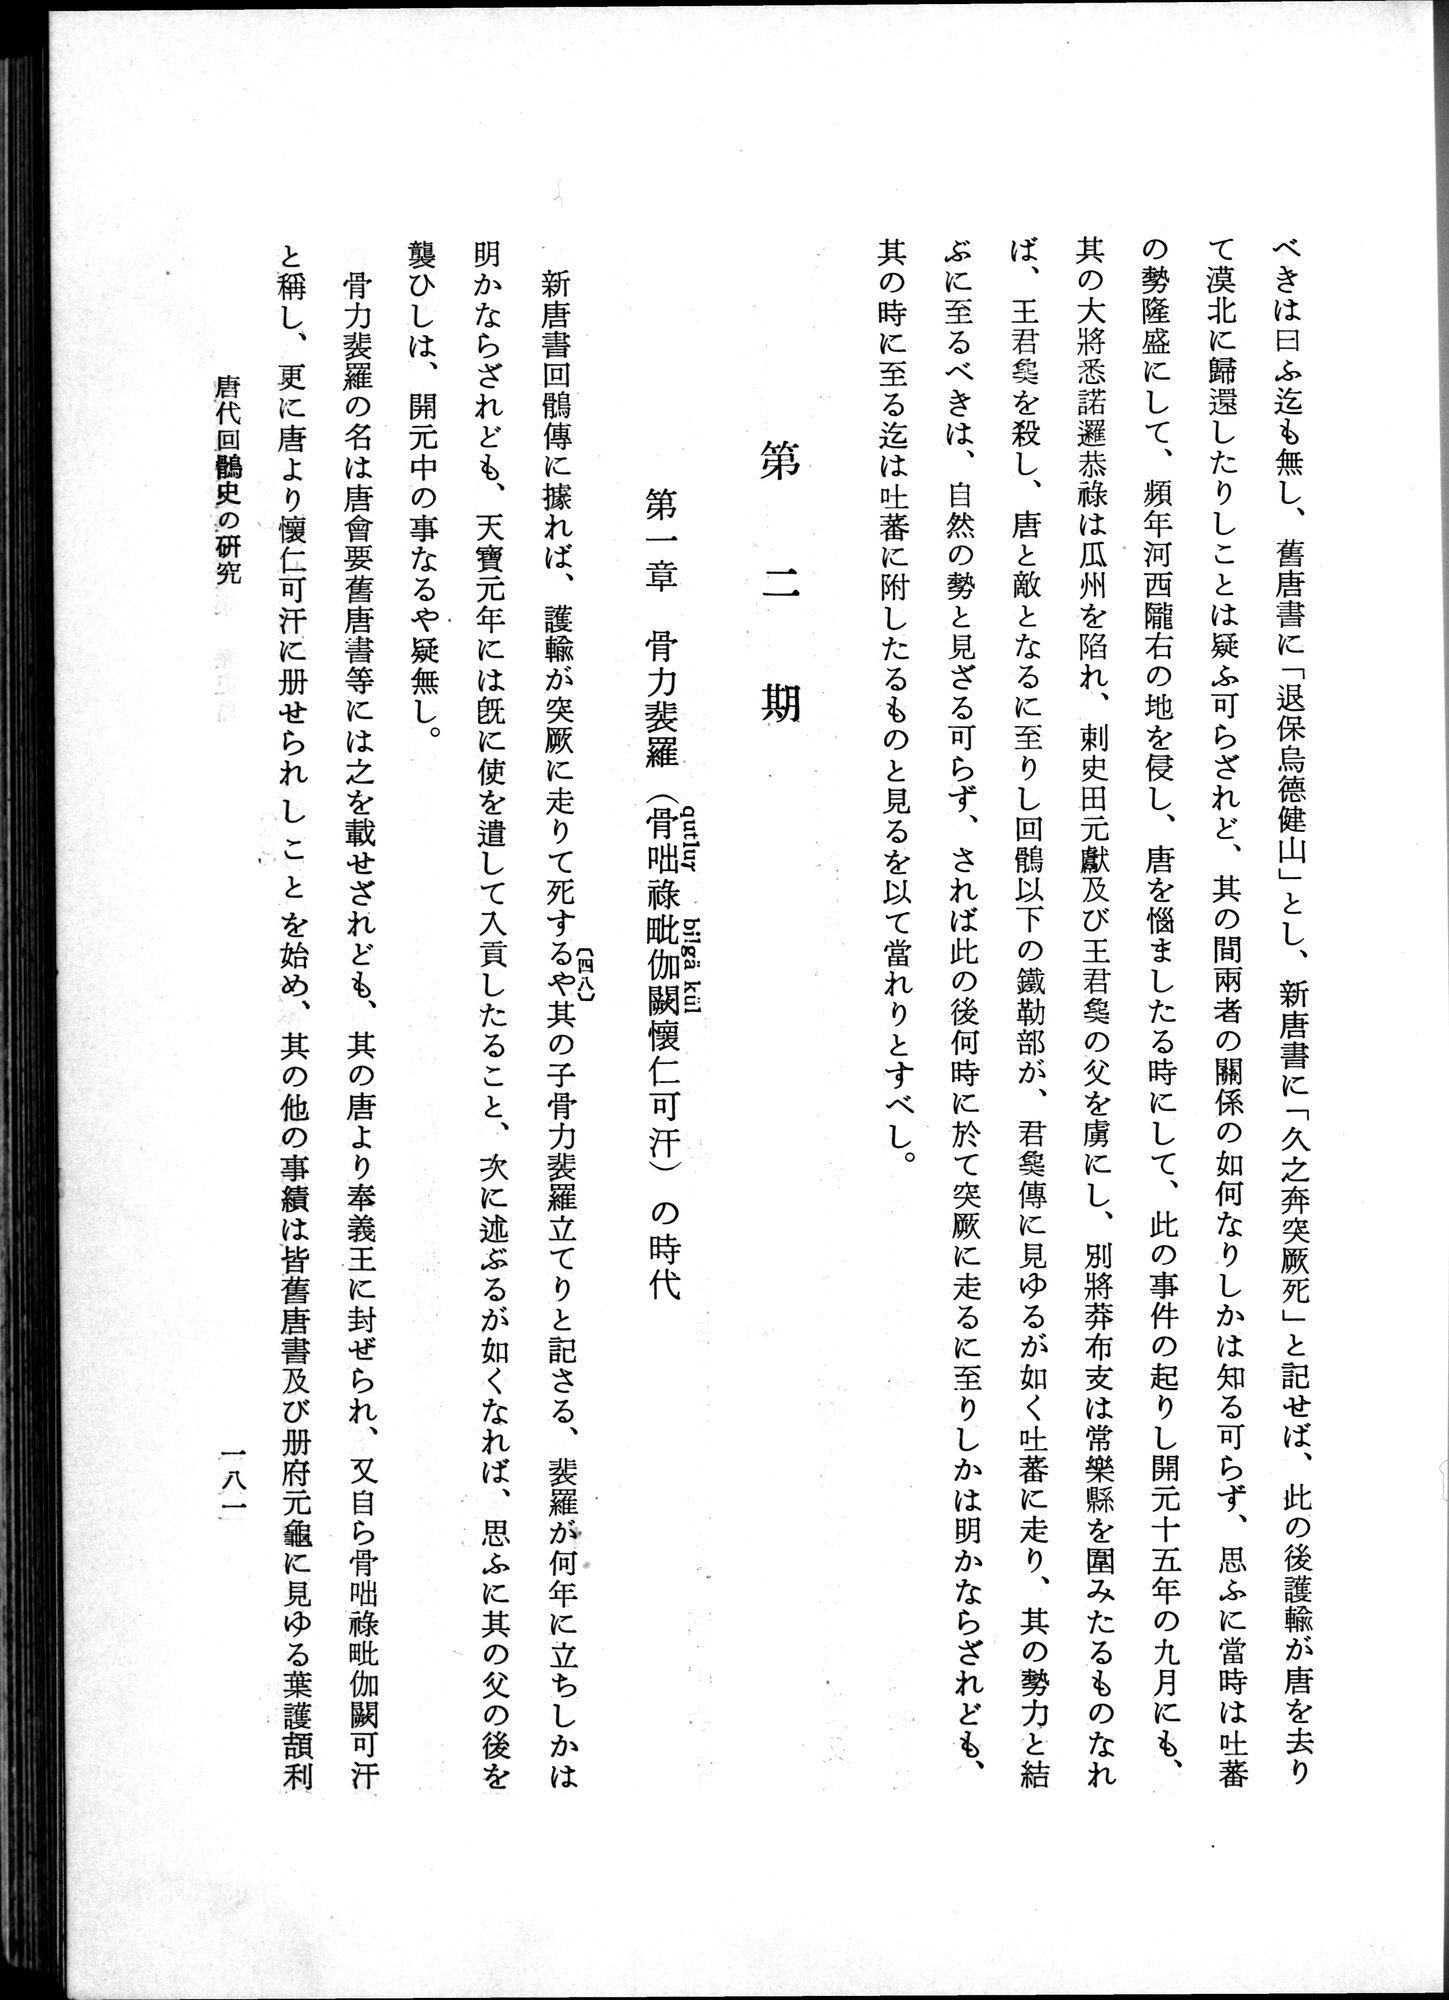 羽田博士史学論文集 : vol.1 / 219 ページ（白黒高解像度画像）